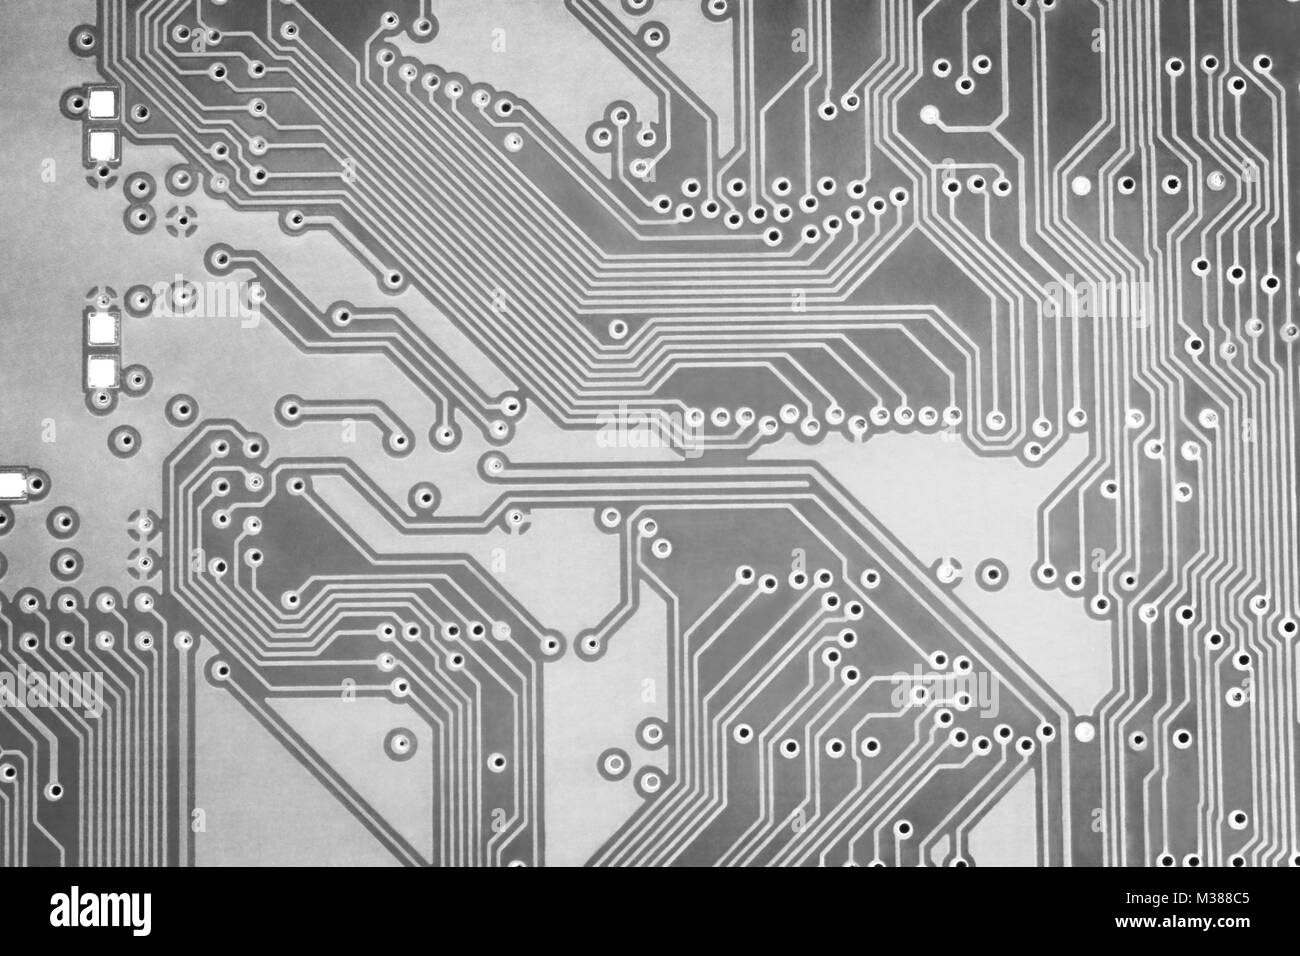 Résumé fond numérique circuit gris close-up Banque D'Images